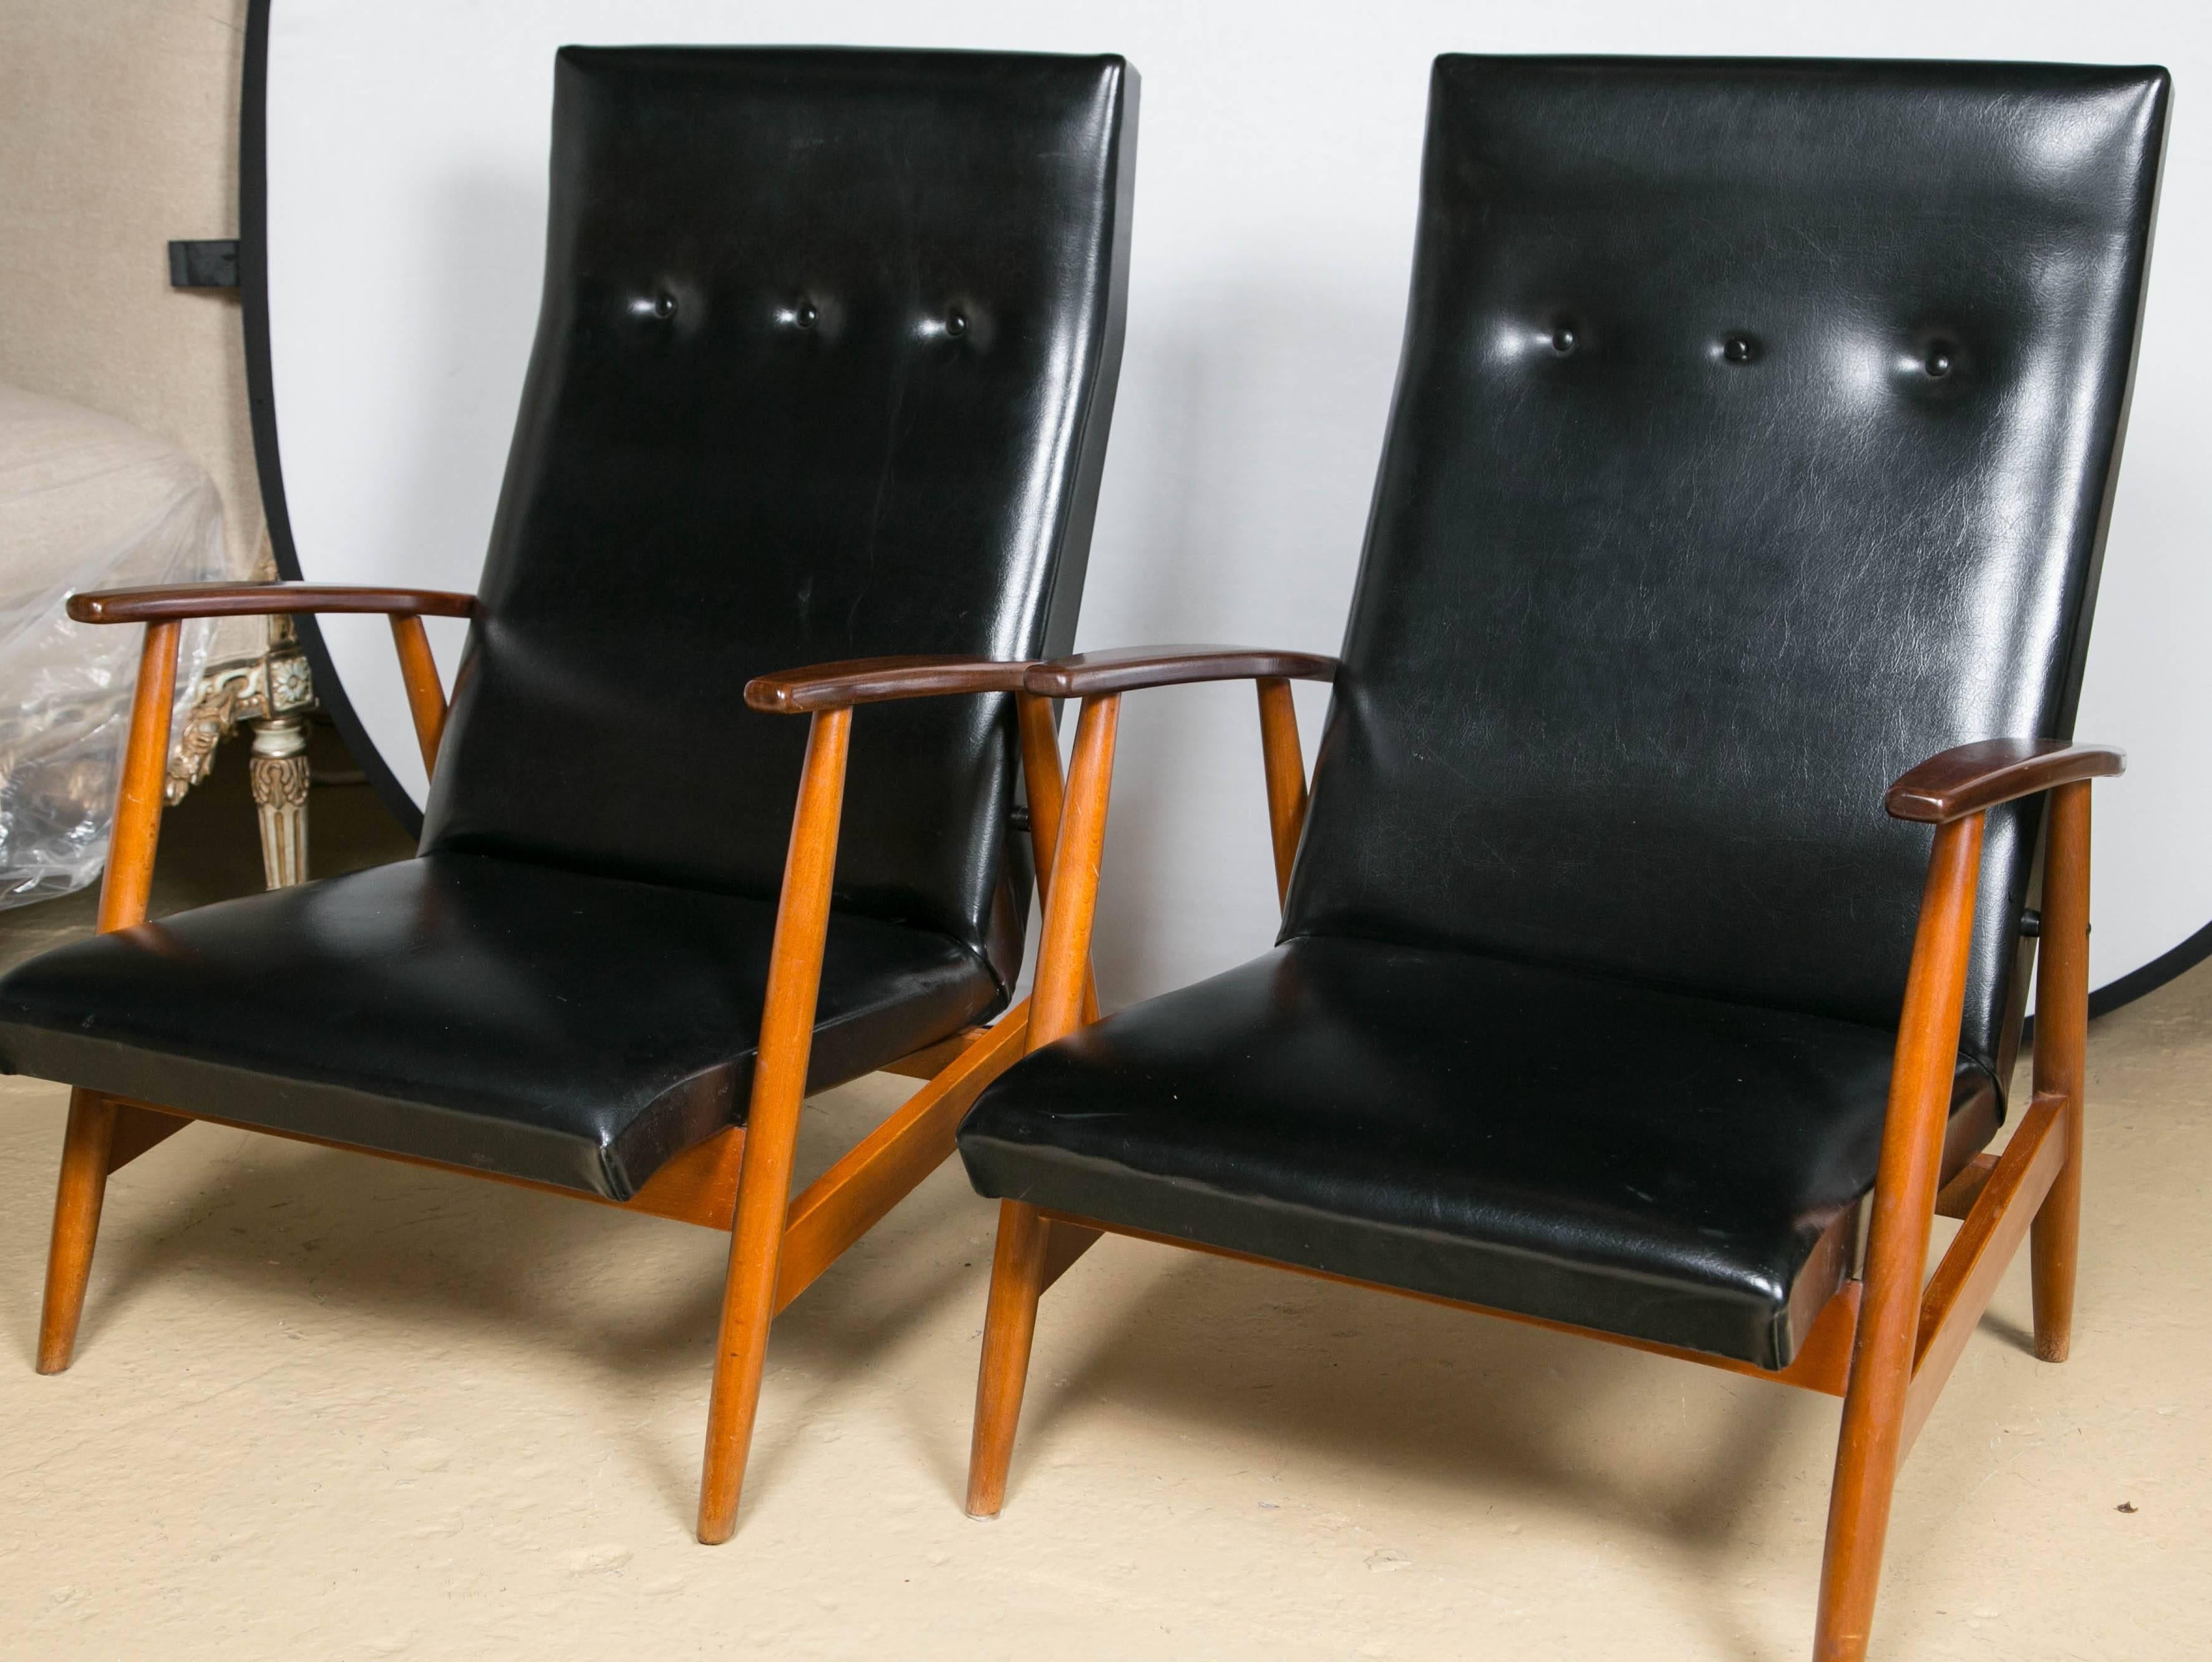 Ein Paar skandinavische Loungesessel aus Teakholz und Schwarz. Einfachheit in ihrer schönsten Form. Dieses Paar Loungesessel in maßgefertigter Qualität hat einen wunderbar raffinierten Mid-Century Modern Look und Design. Die Holzrahmen wurden vor